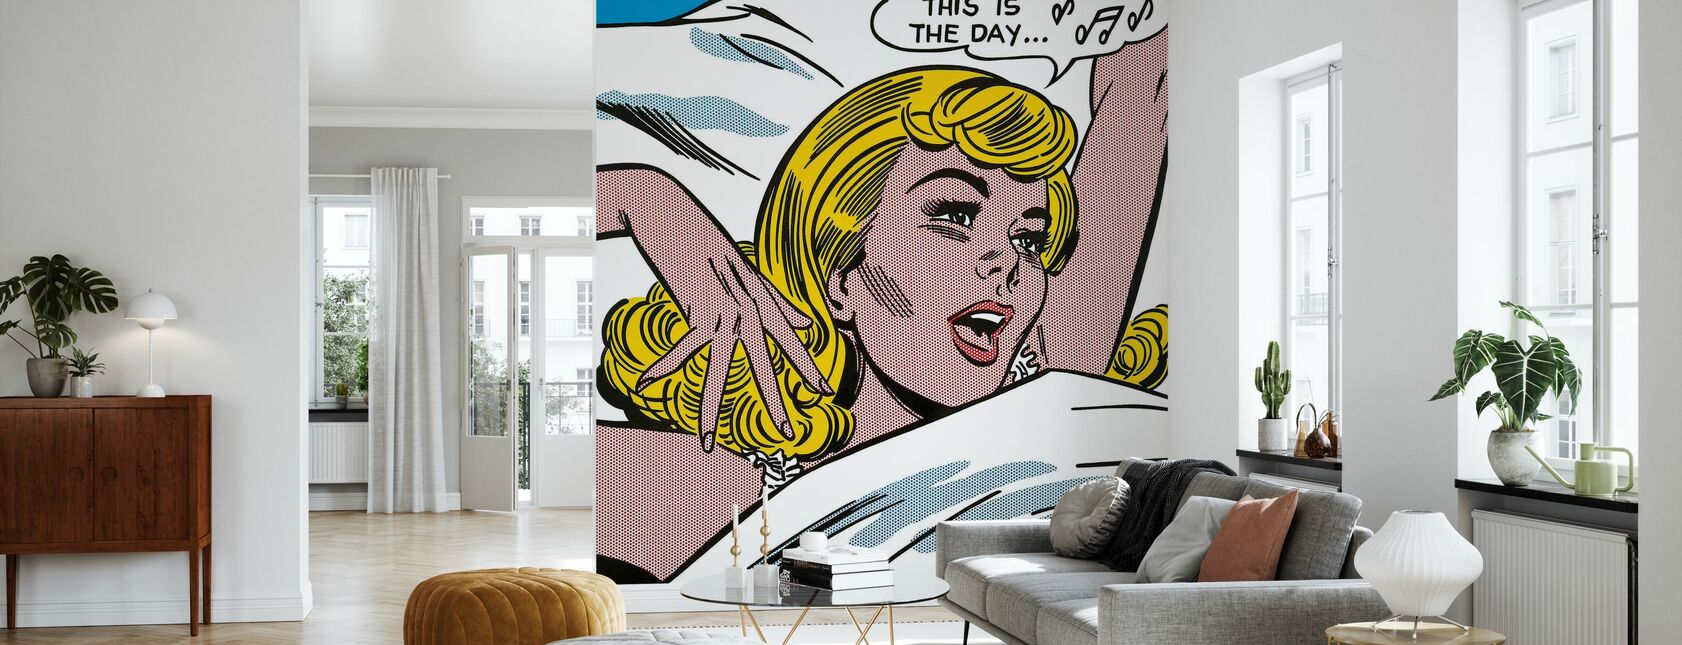 Awakening - Wallpaper - Living Room